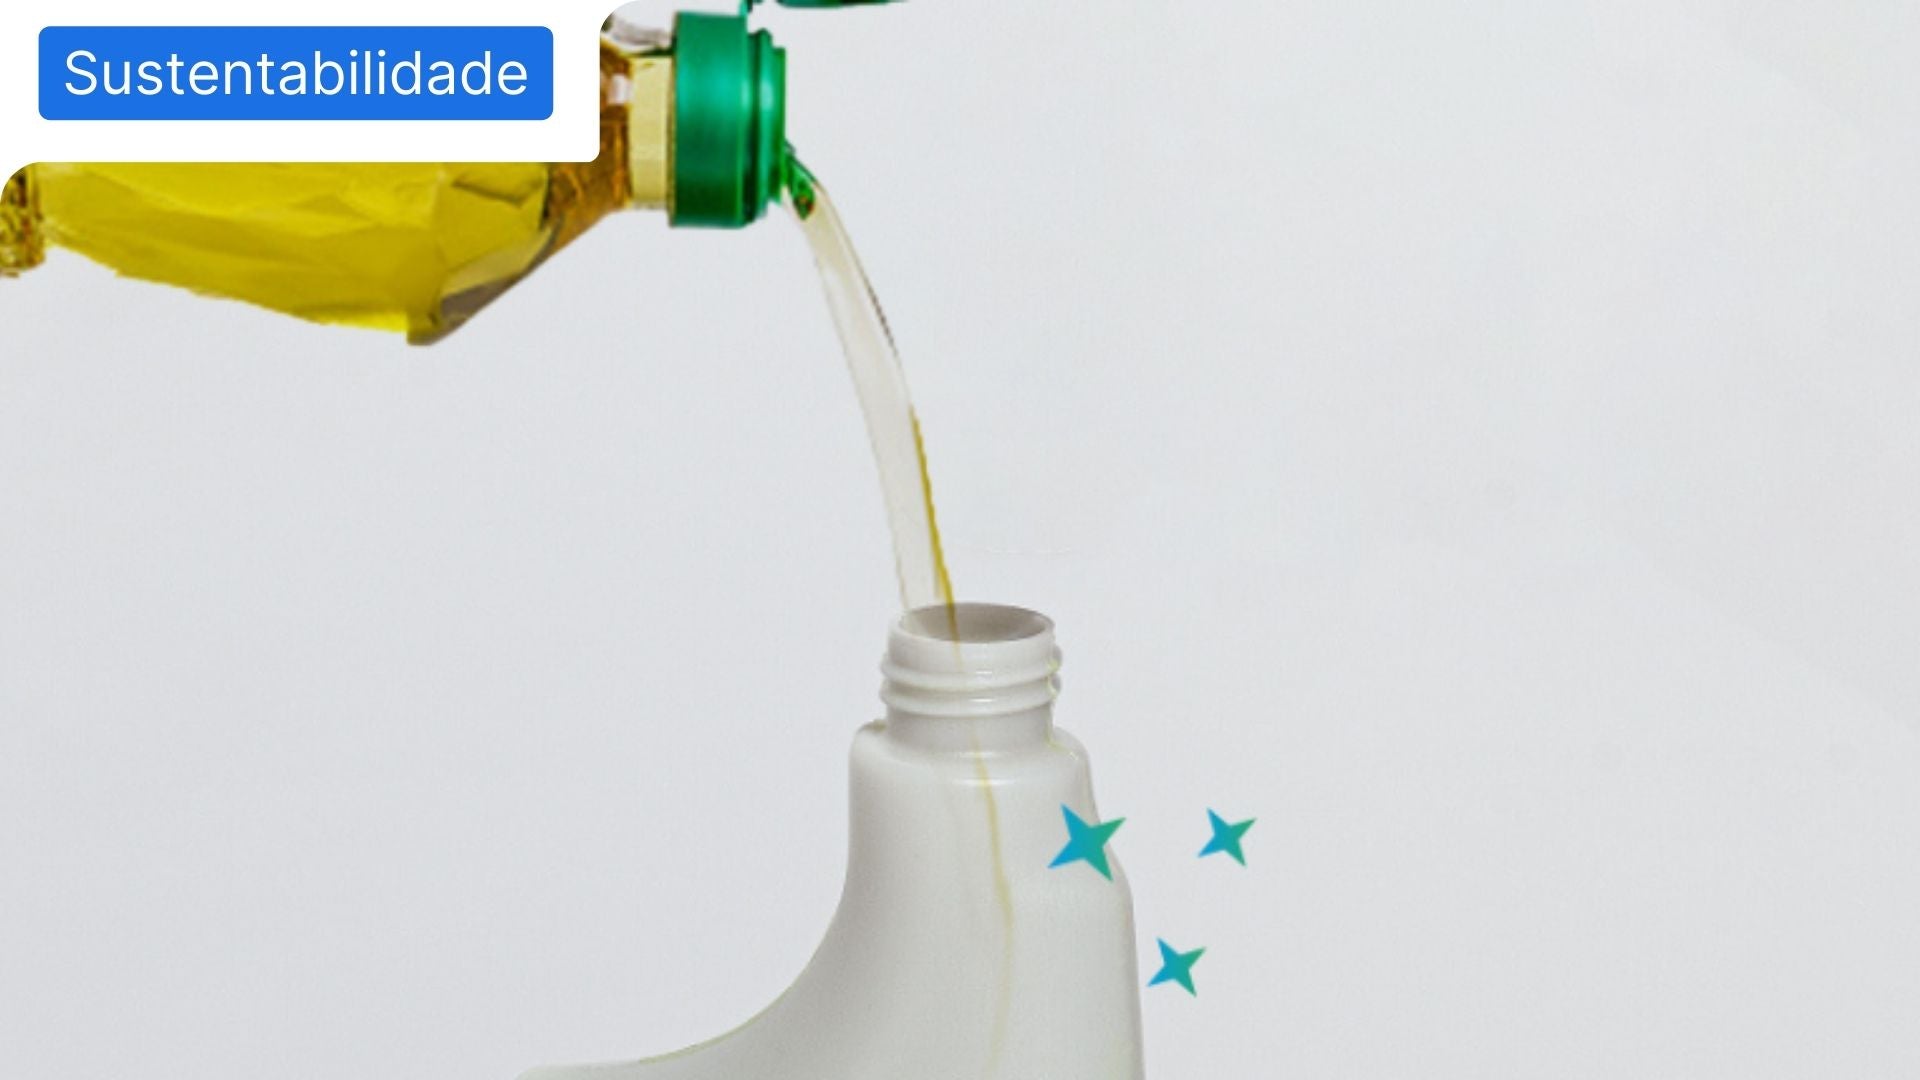 Garrafa de óleo alimentar usado a verter o óleo para uma garrafa de detergente EcoX, que se transforma em detergente upcycling